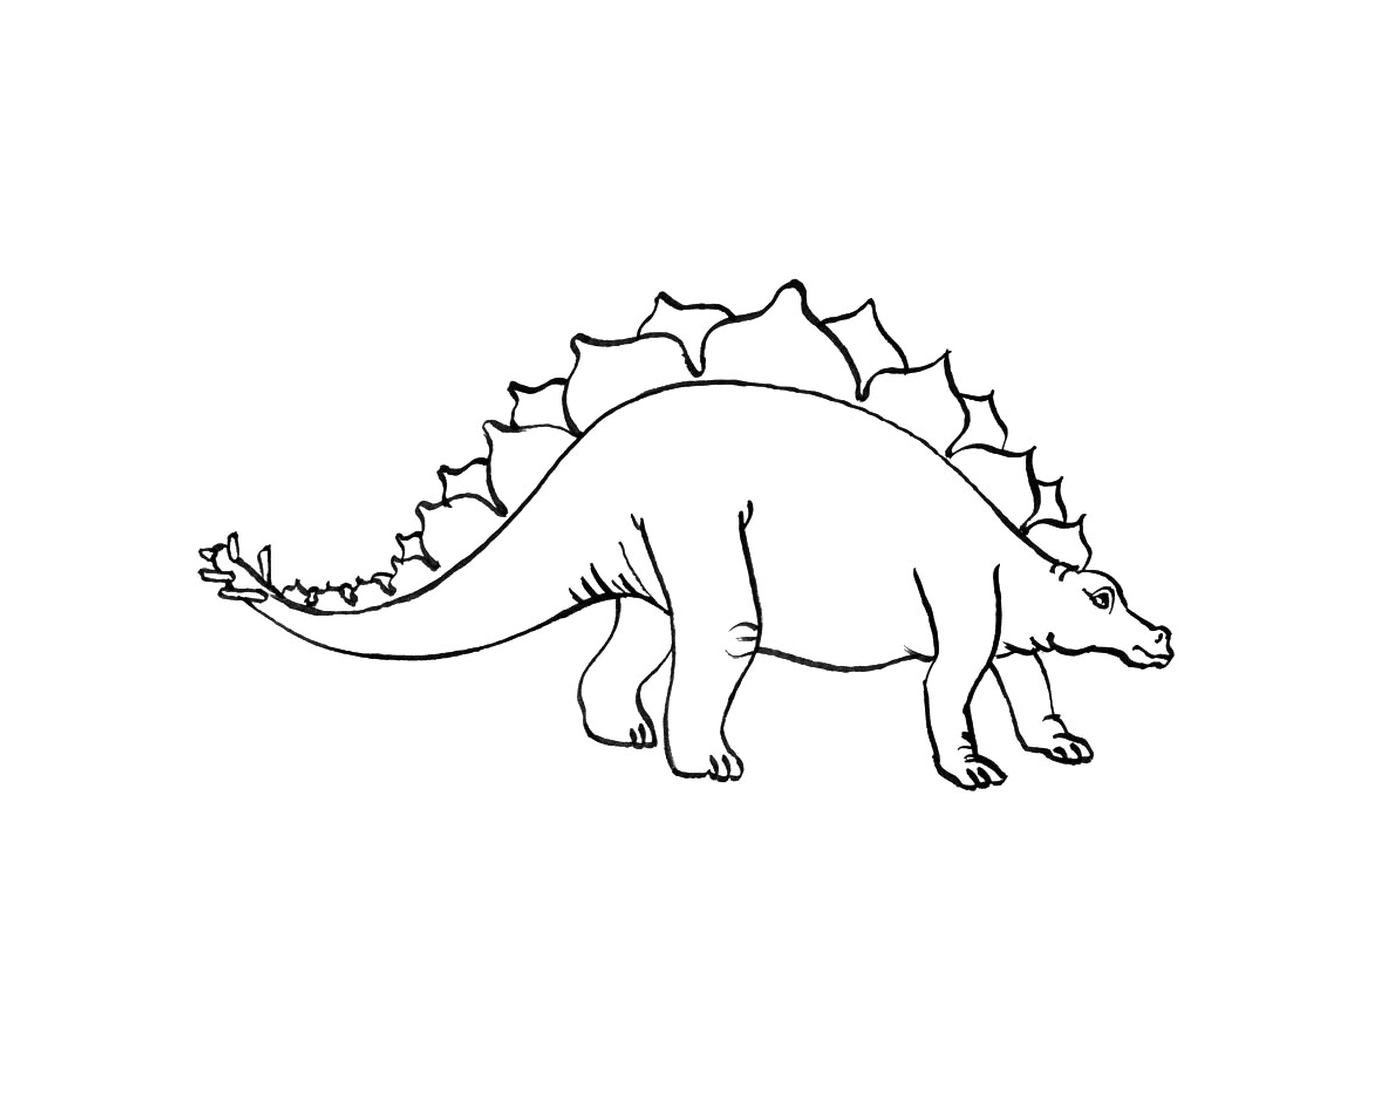   Stégosaure debout dans un dessin en noir et blanc 